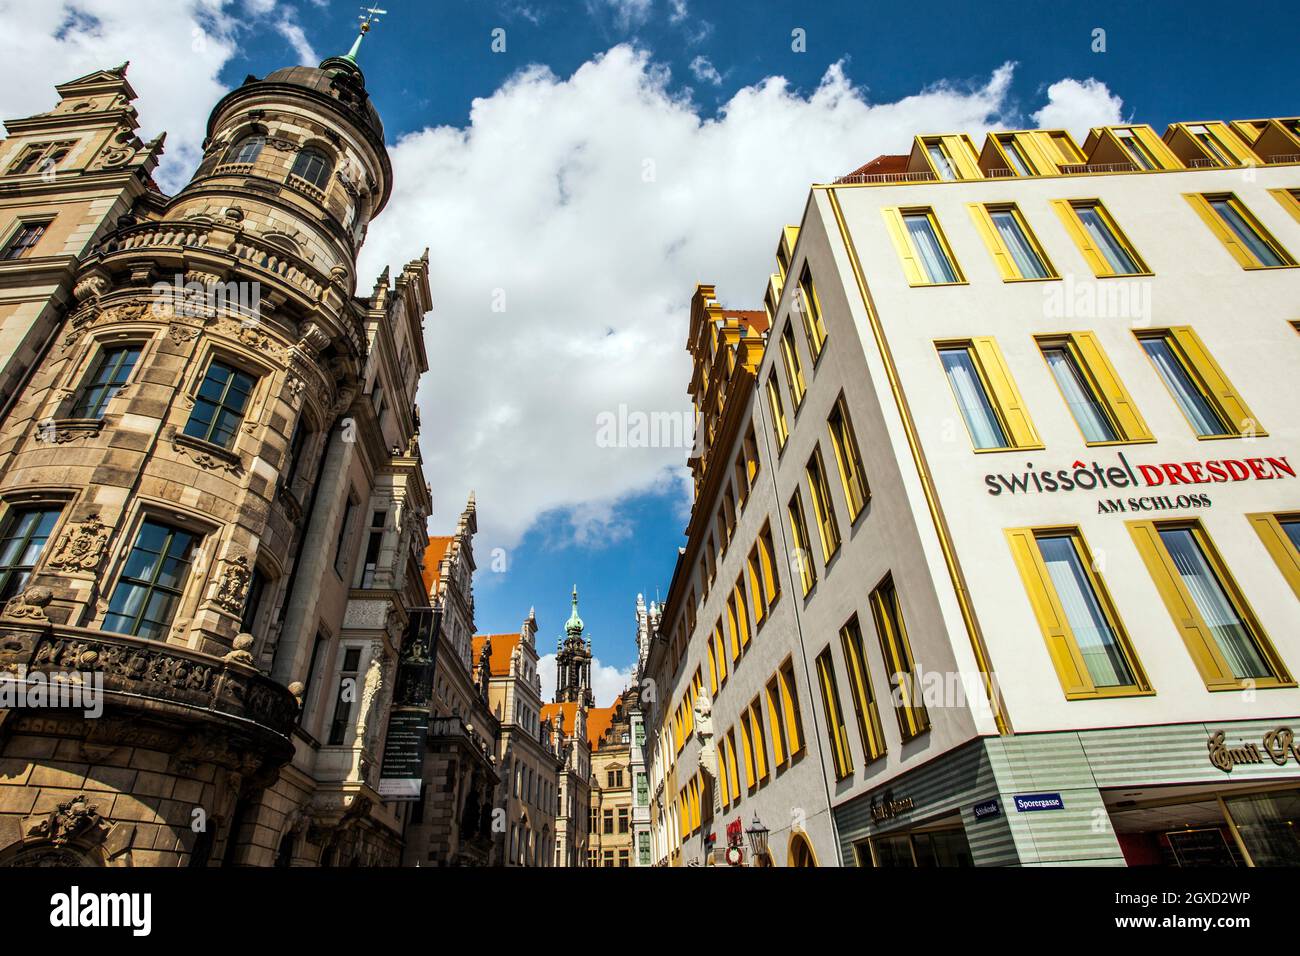 Au bâtiment de gauche à l'angle de la rue, Taschenberg Schlossstrasse et à droite de l'Hôtel Suisse, Dresde, Saxe, Allemagne, Europe. Banque D'Images